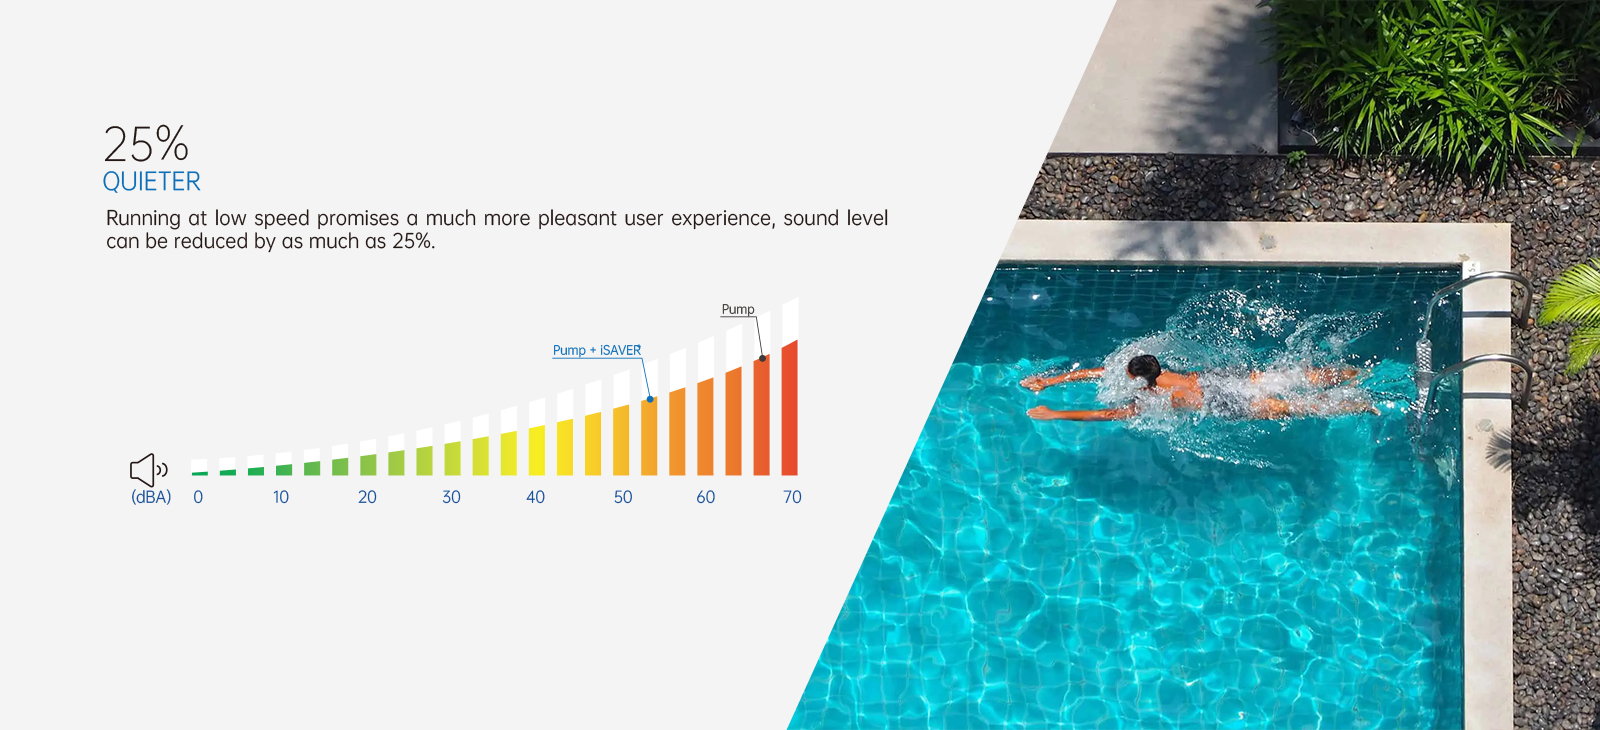 Bomba de piscina com inversor de frequência iSAVER+ 25% mais silenciosa